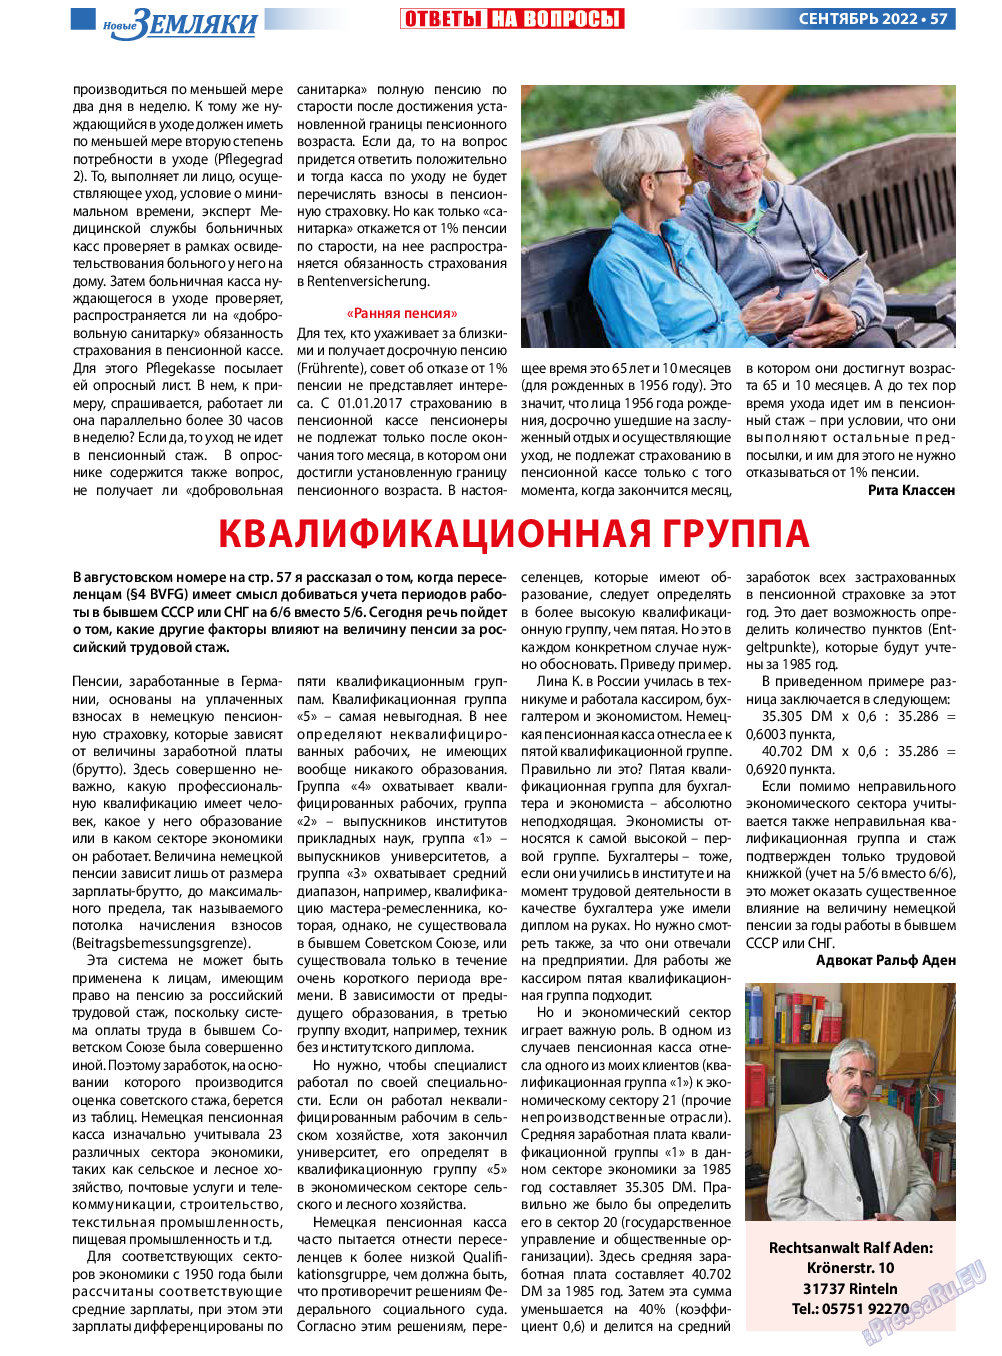 Новые Земляки, газета. 2022 №9 стр.57